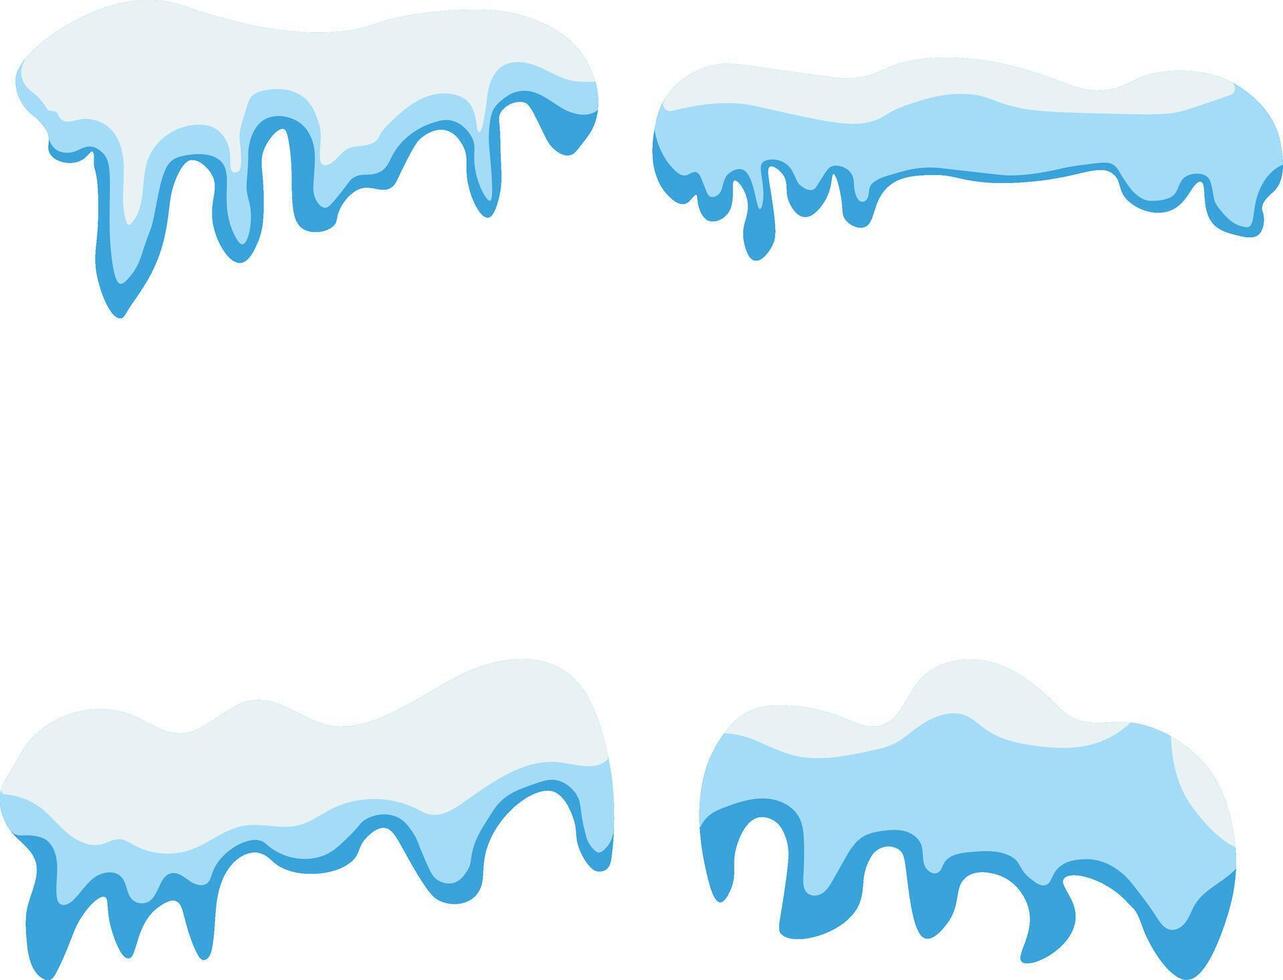 Bonnet de neige frontière illustration. isolé sur blanc arrière-plan, abstrait dessin animé décoration. vecteur